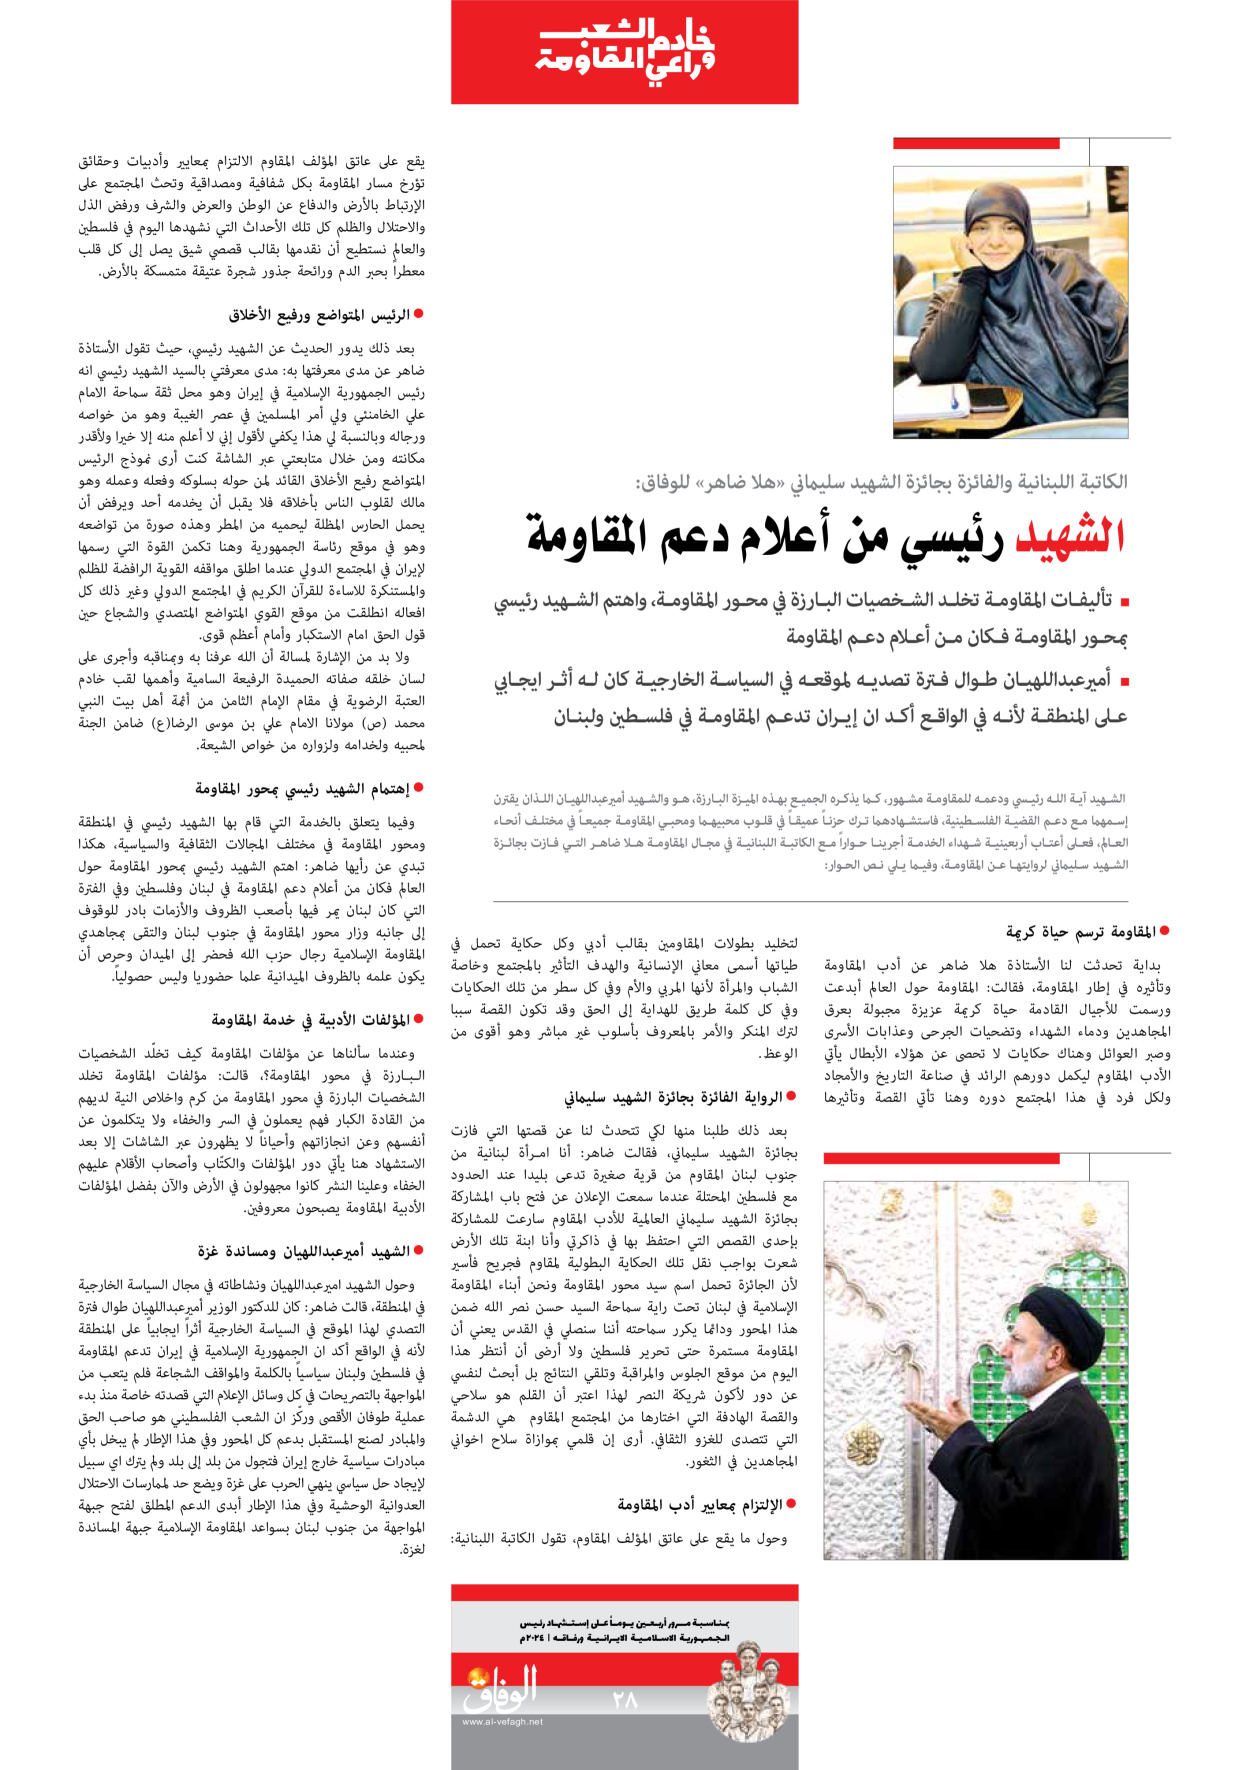 صحیفة ایران الدولیة الوفاق - ملحق ویژه نامه چهلم شهید رییسی - ٢٩ يونيو ٢٠٢٤ - الصفحة ۲۸